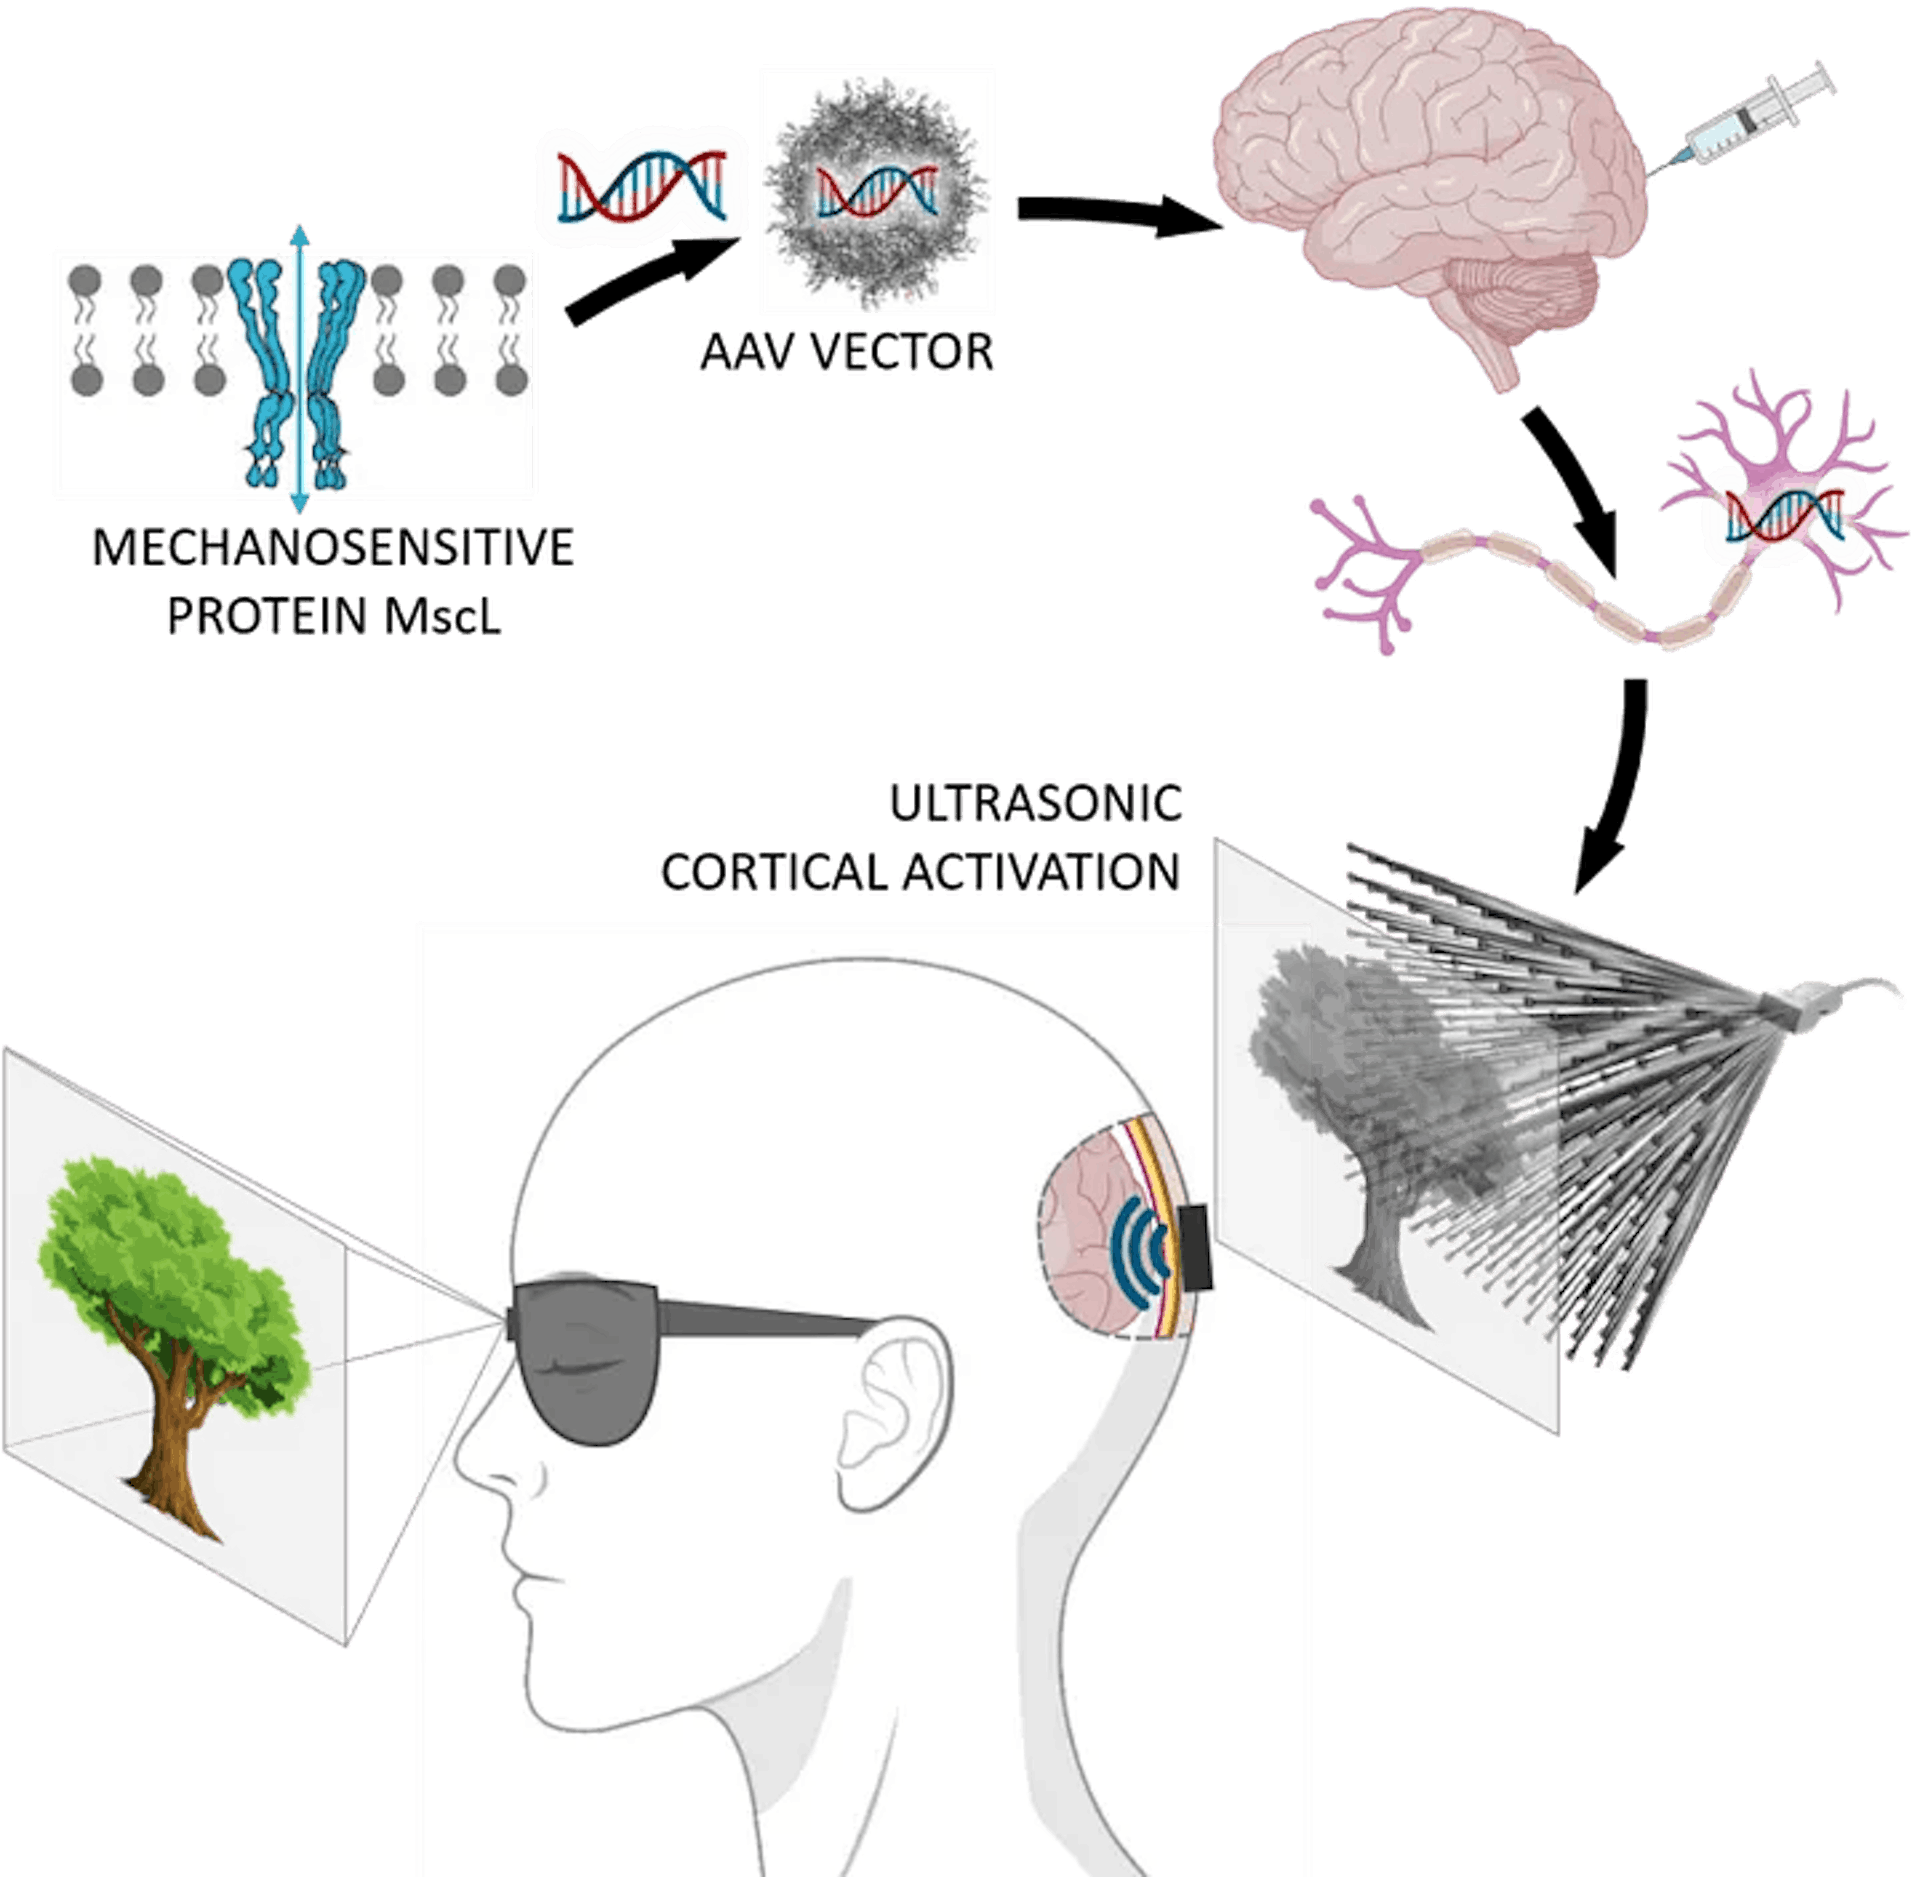 as imagens podem ser projetadas diretamente no cérebro por ultrassom para curar a cegueira, fonte: https://www.physicsformedicine.espci.fr/publication-in-nature-nanotechnology-towards-restoring-vision-using-ultrasound-sonogenetics